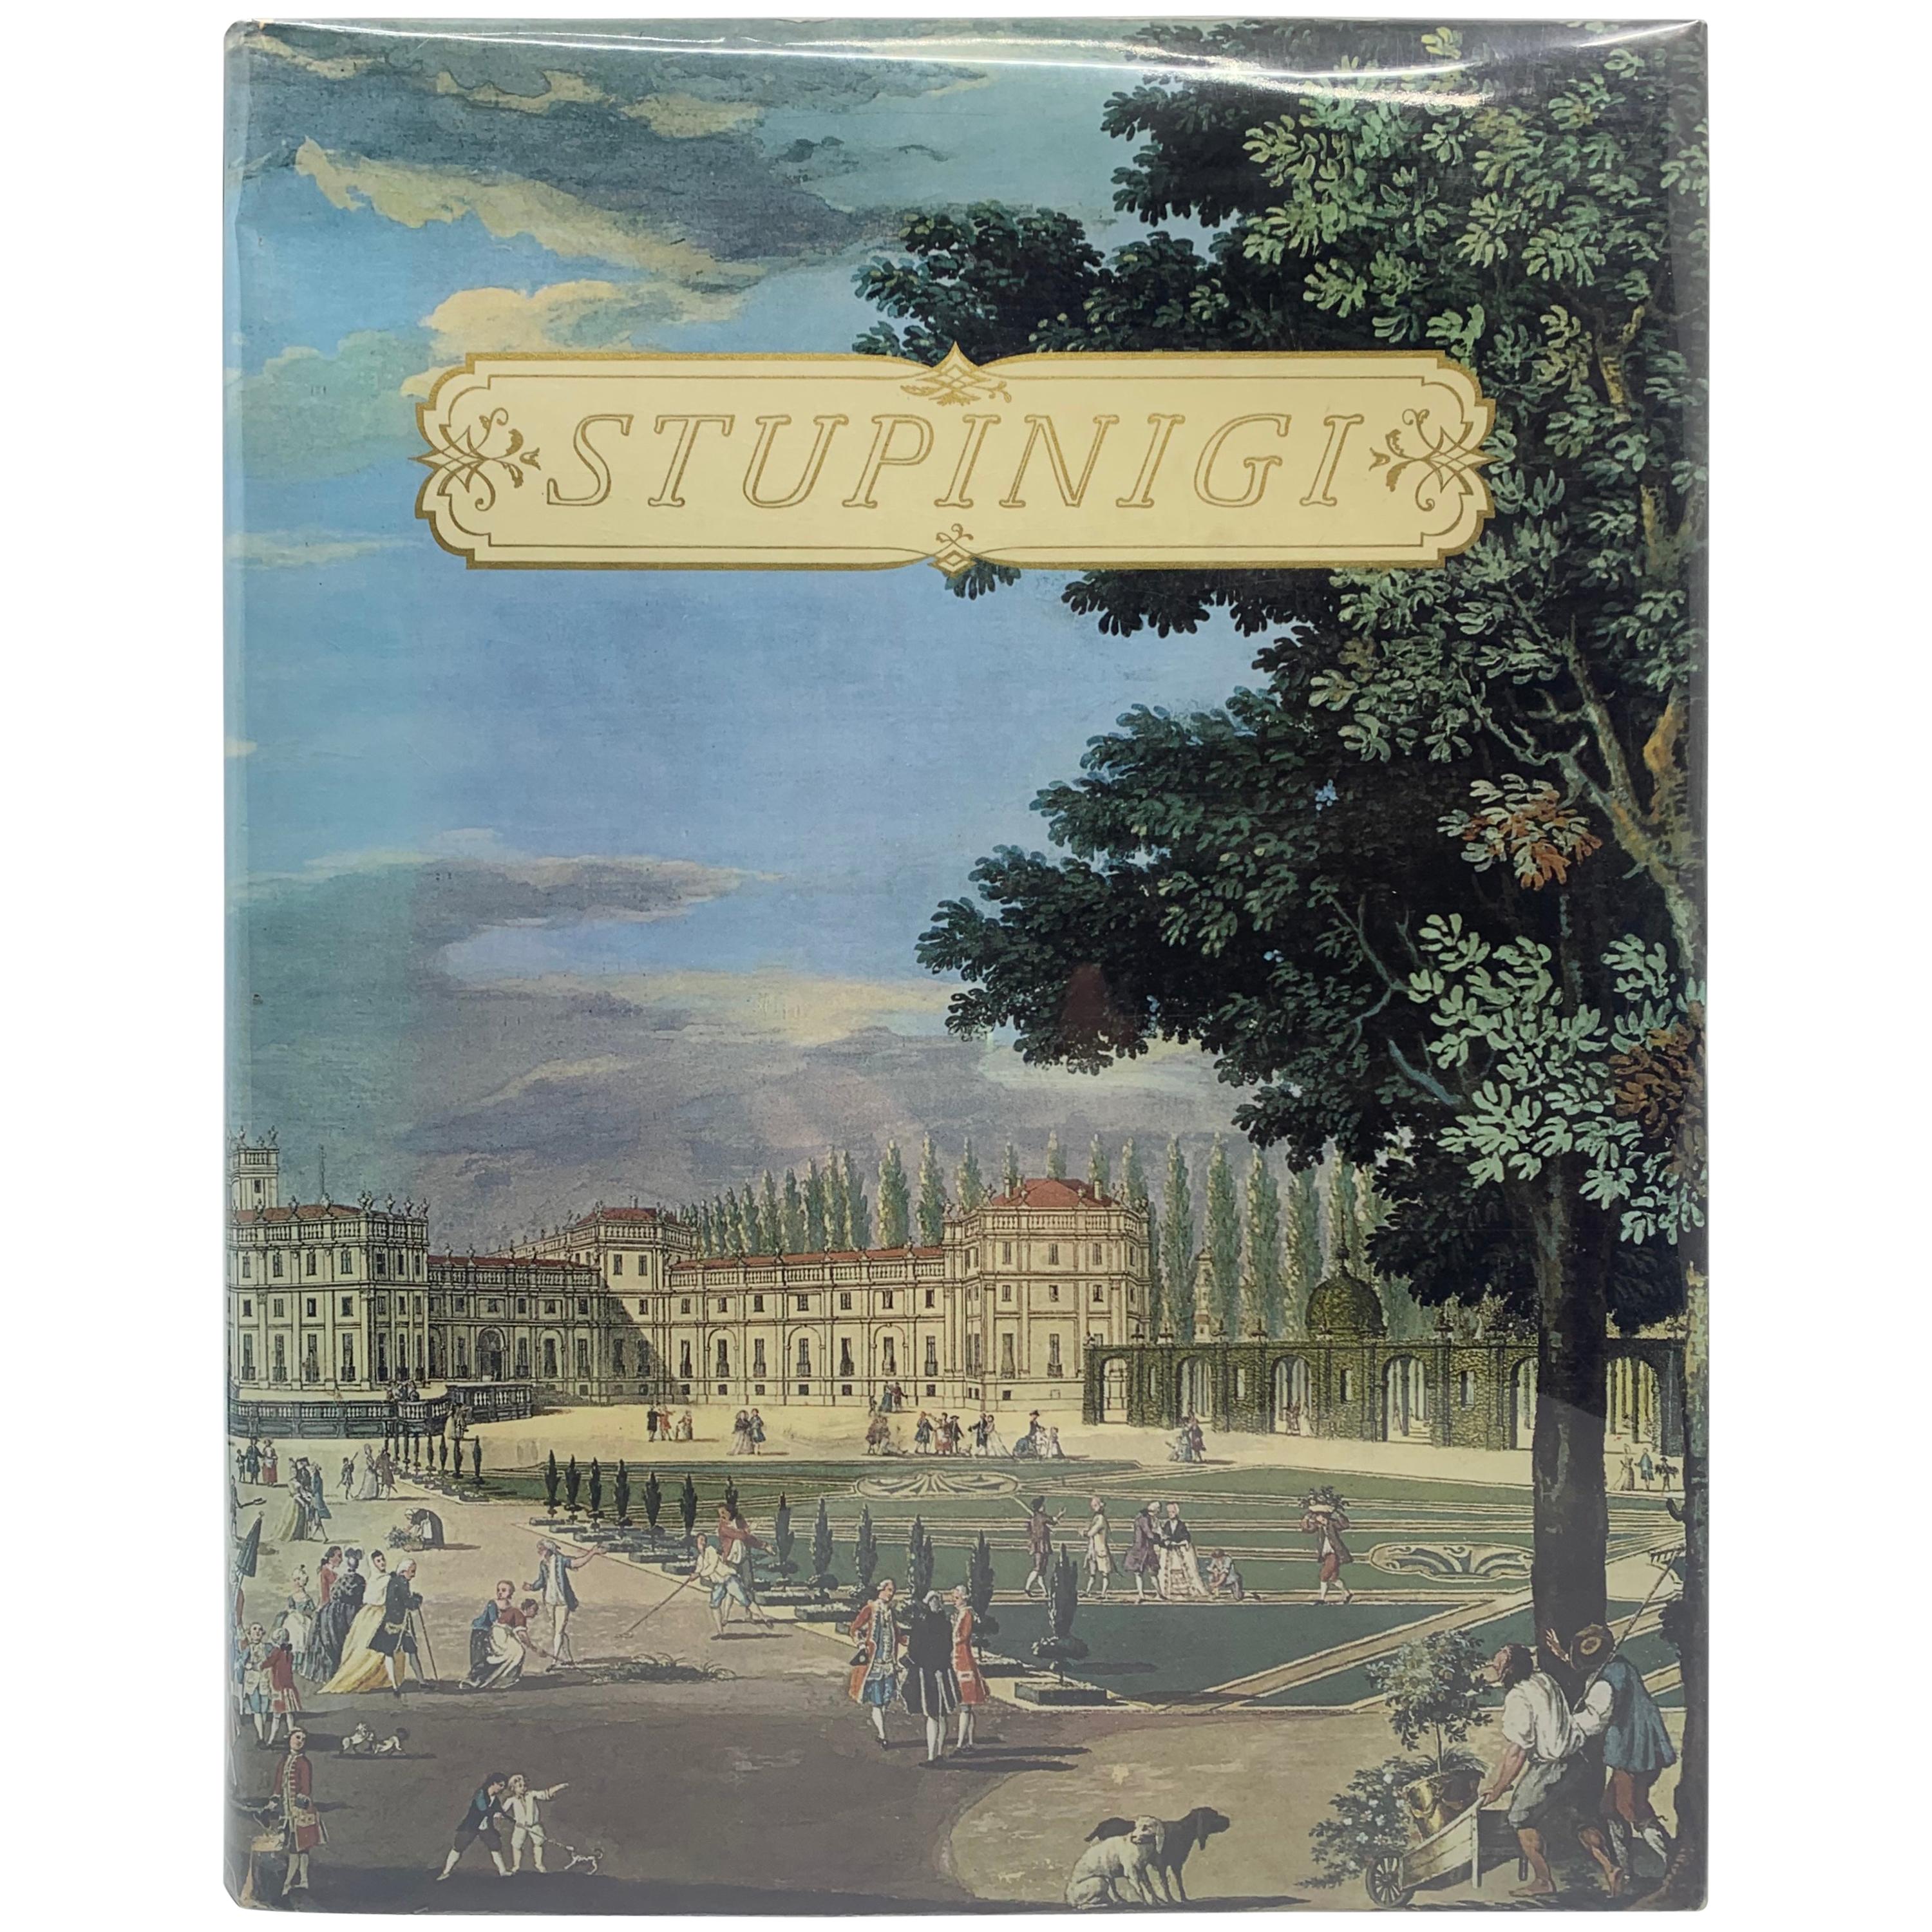 Stupinigi, ein Meisterwerk des 17. Jahrhunderts in Europa zwischen Barock und Klassizismus